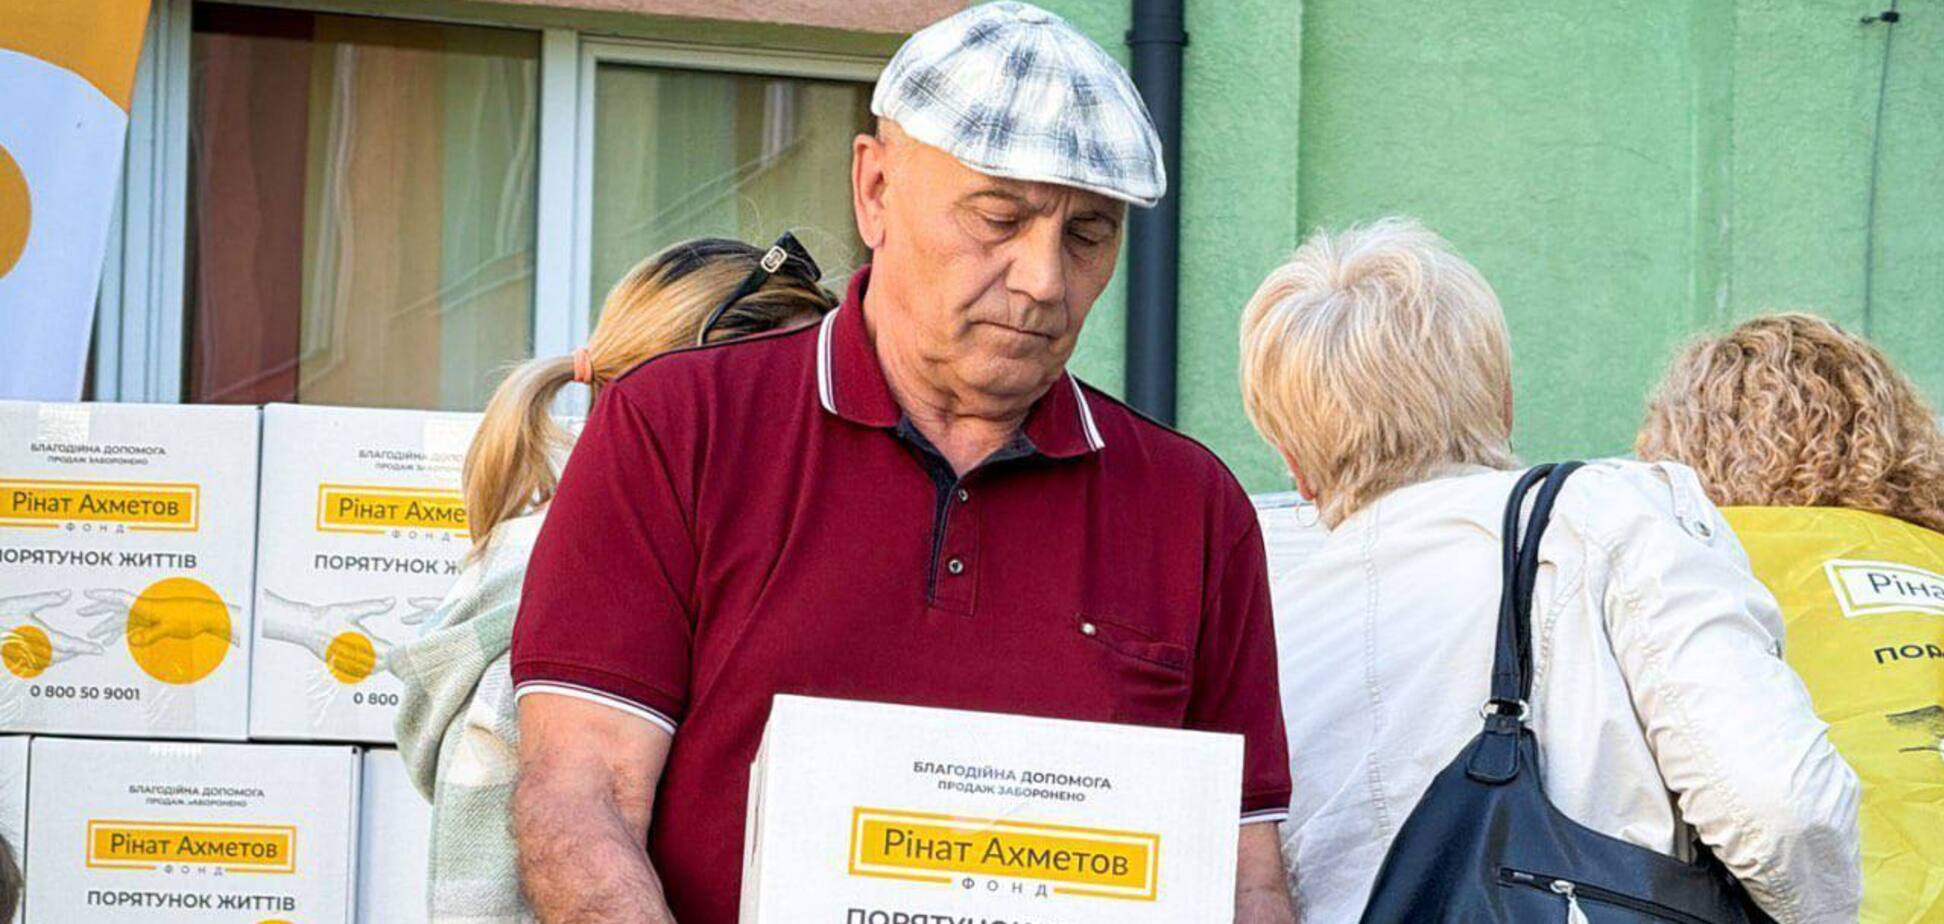 Мешканці Новогродівки отримали продуктові набори від Фонду Ріната Ахметова